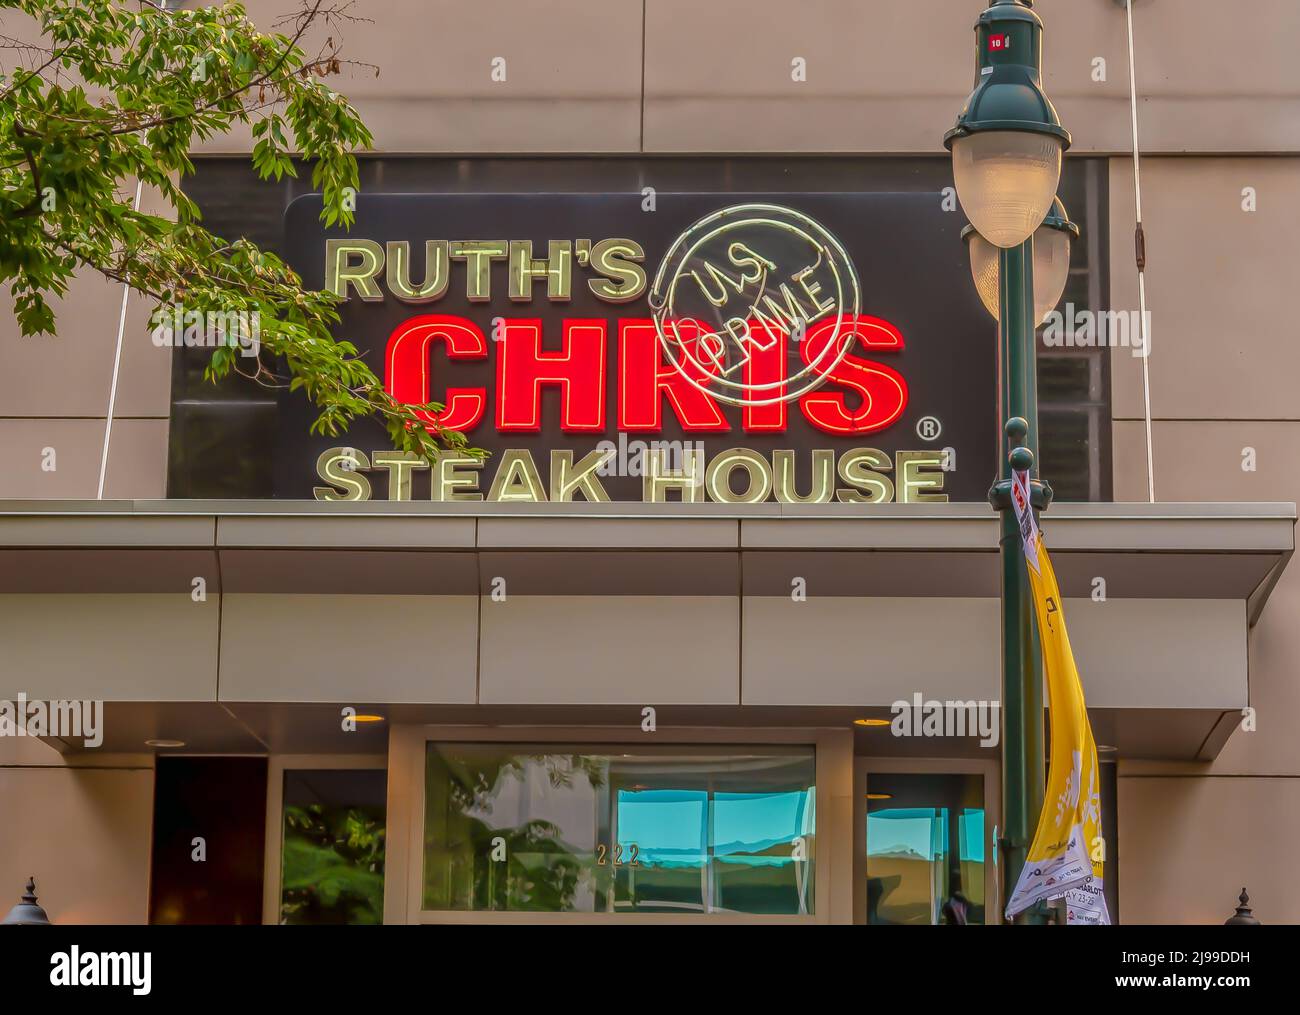 Orizzontale, facciata esterna marchio e logo segnaletica del 'Ruth's Chris' Steak House nella luce soffusa dei ramchjes di alberi di crepuscolo, lampione e neon illuminato. Foto Stock